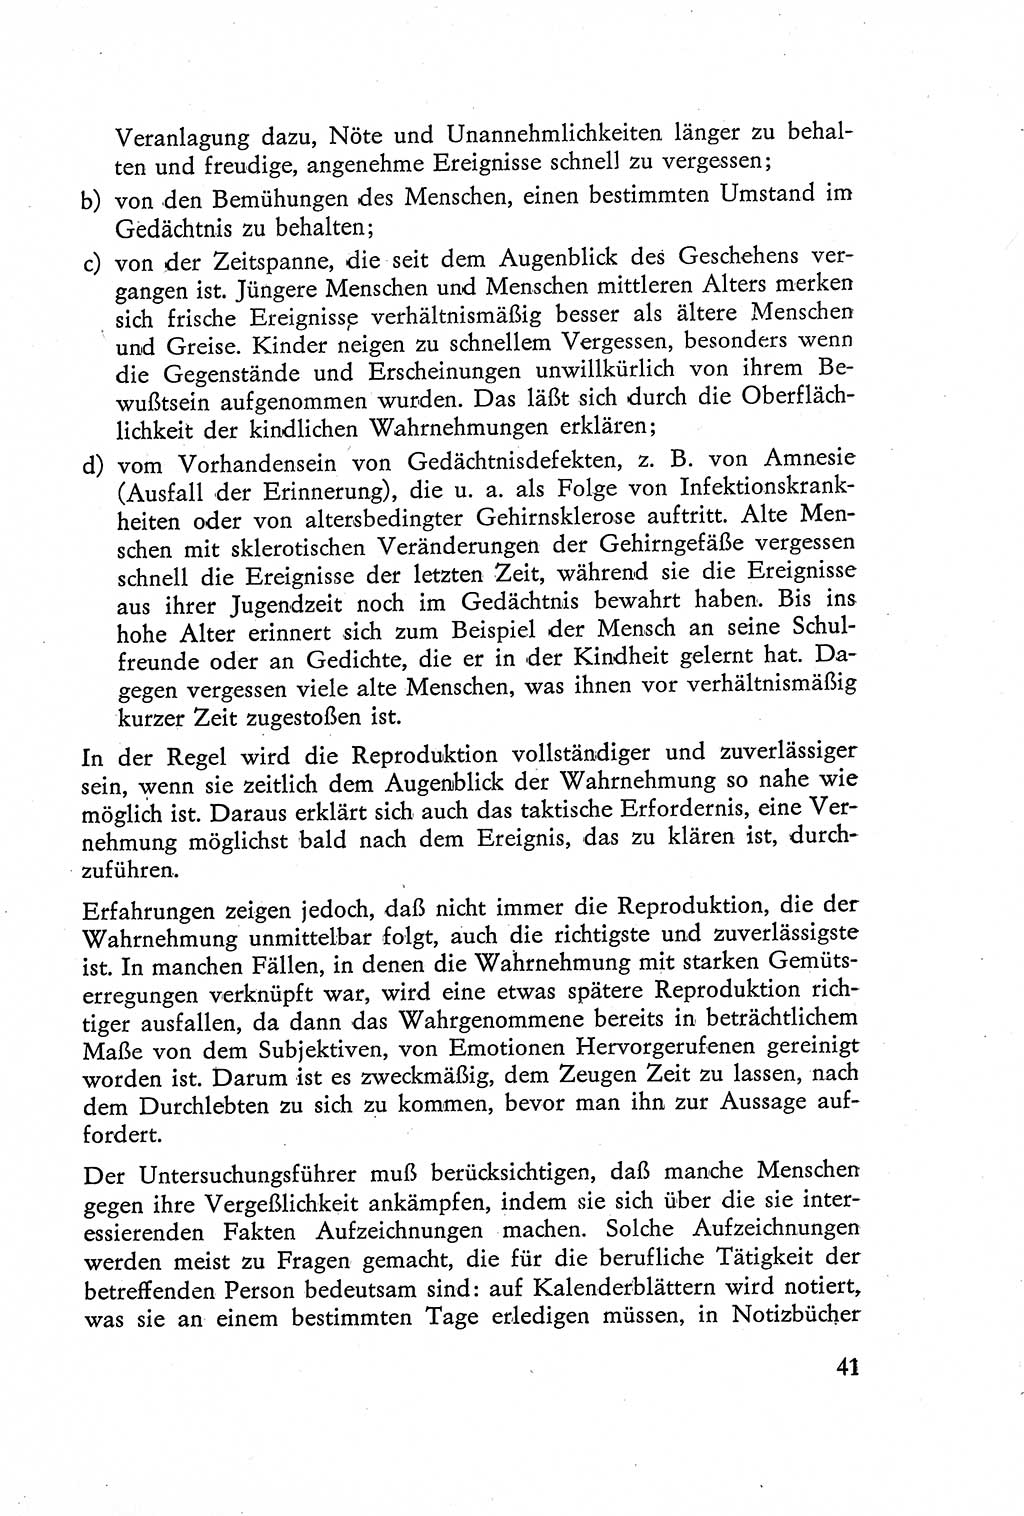 Die Vernehmung [Deutsche Demokratische Republik (DDR)] 1960, Seite 41 (Vern. DDR 1960, S. 41)